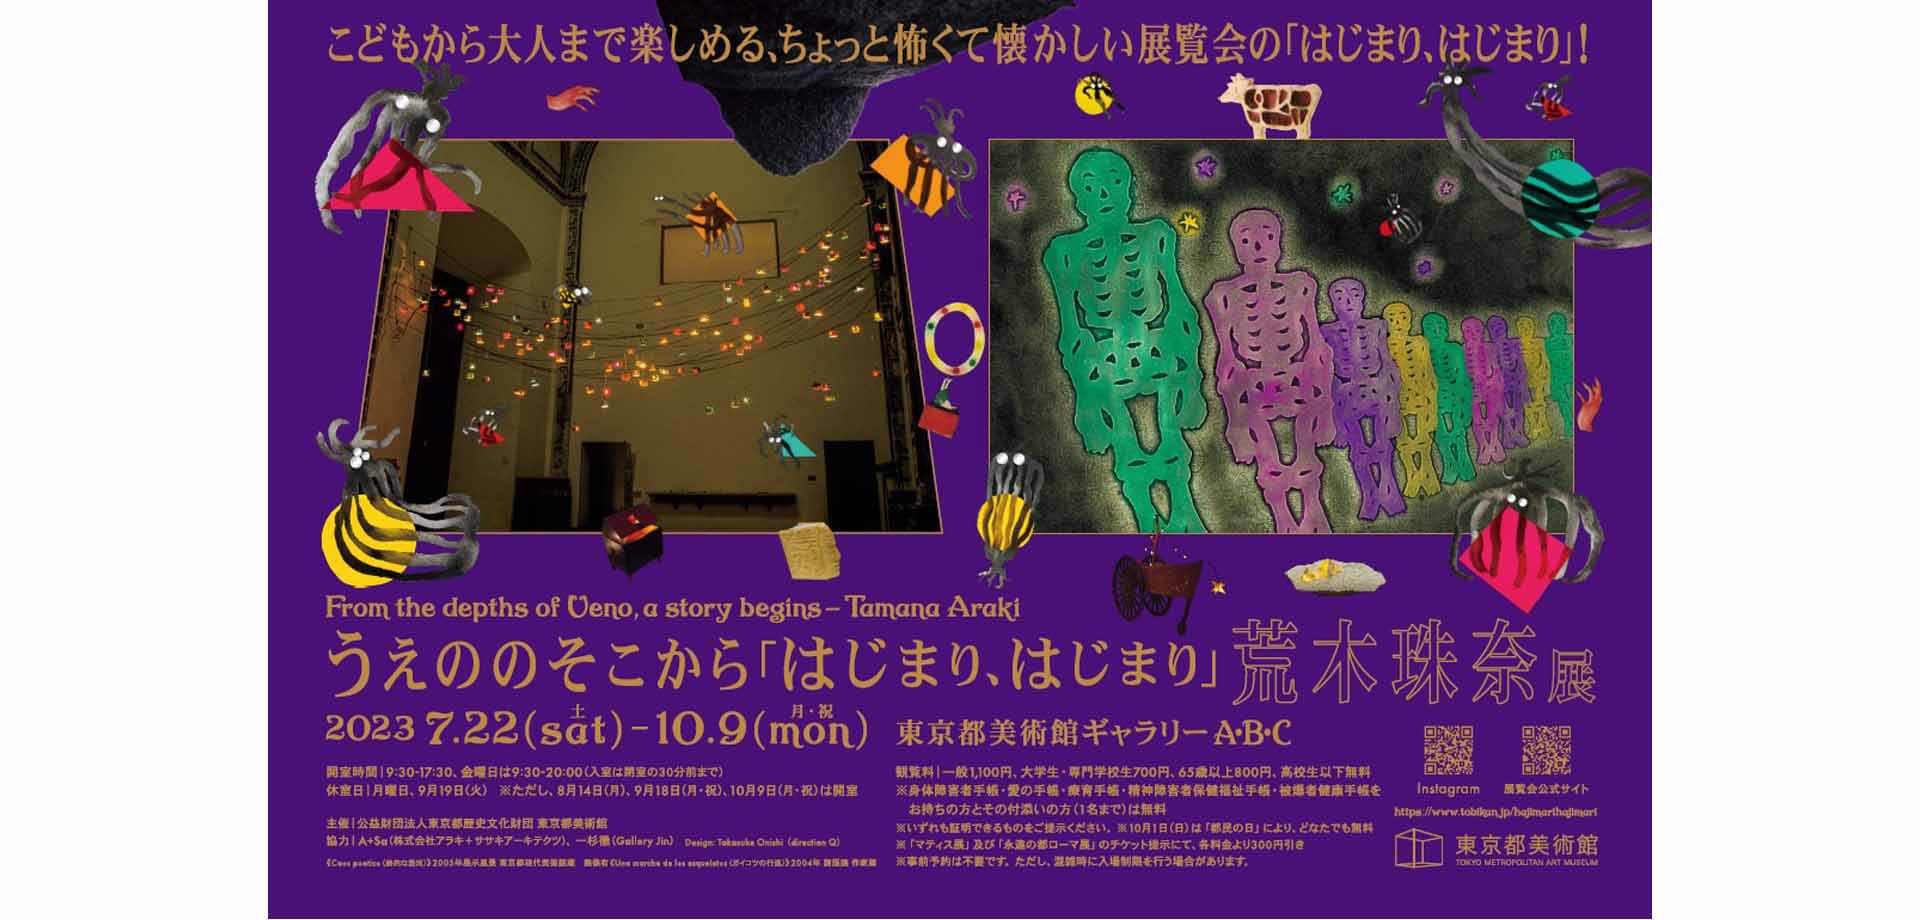 東京都美術館 企画展「うえののそこから「はじまり、はじまり」荒木珠奈 展」